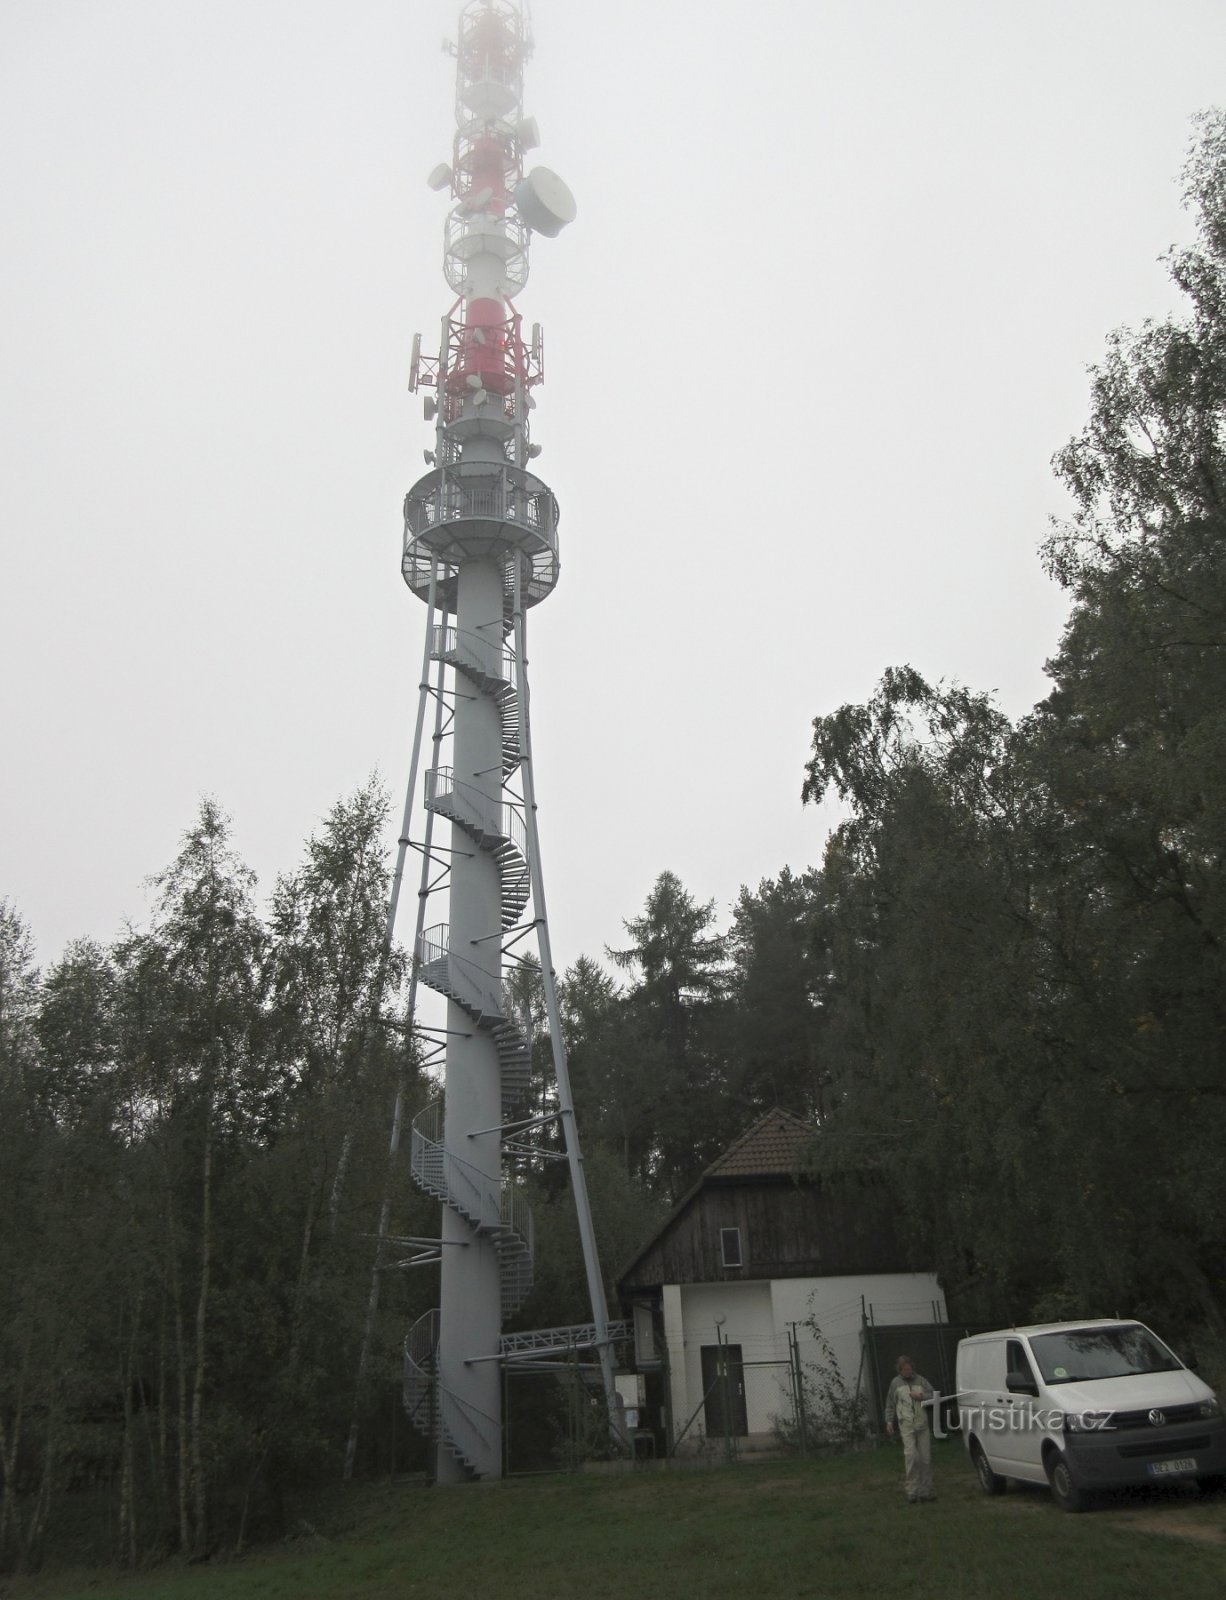 Dobev - Turnul de observație Velký Kamýk (lângă Písek)